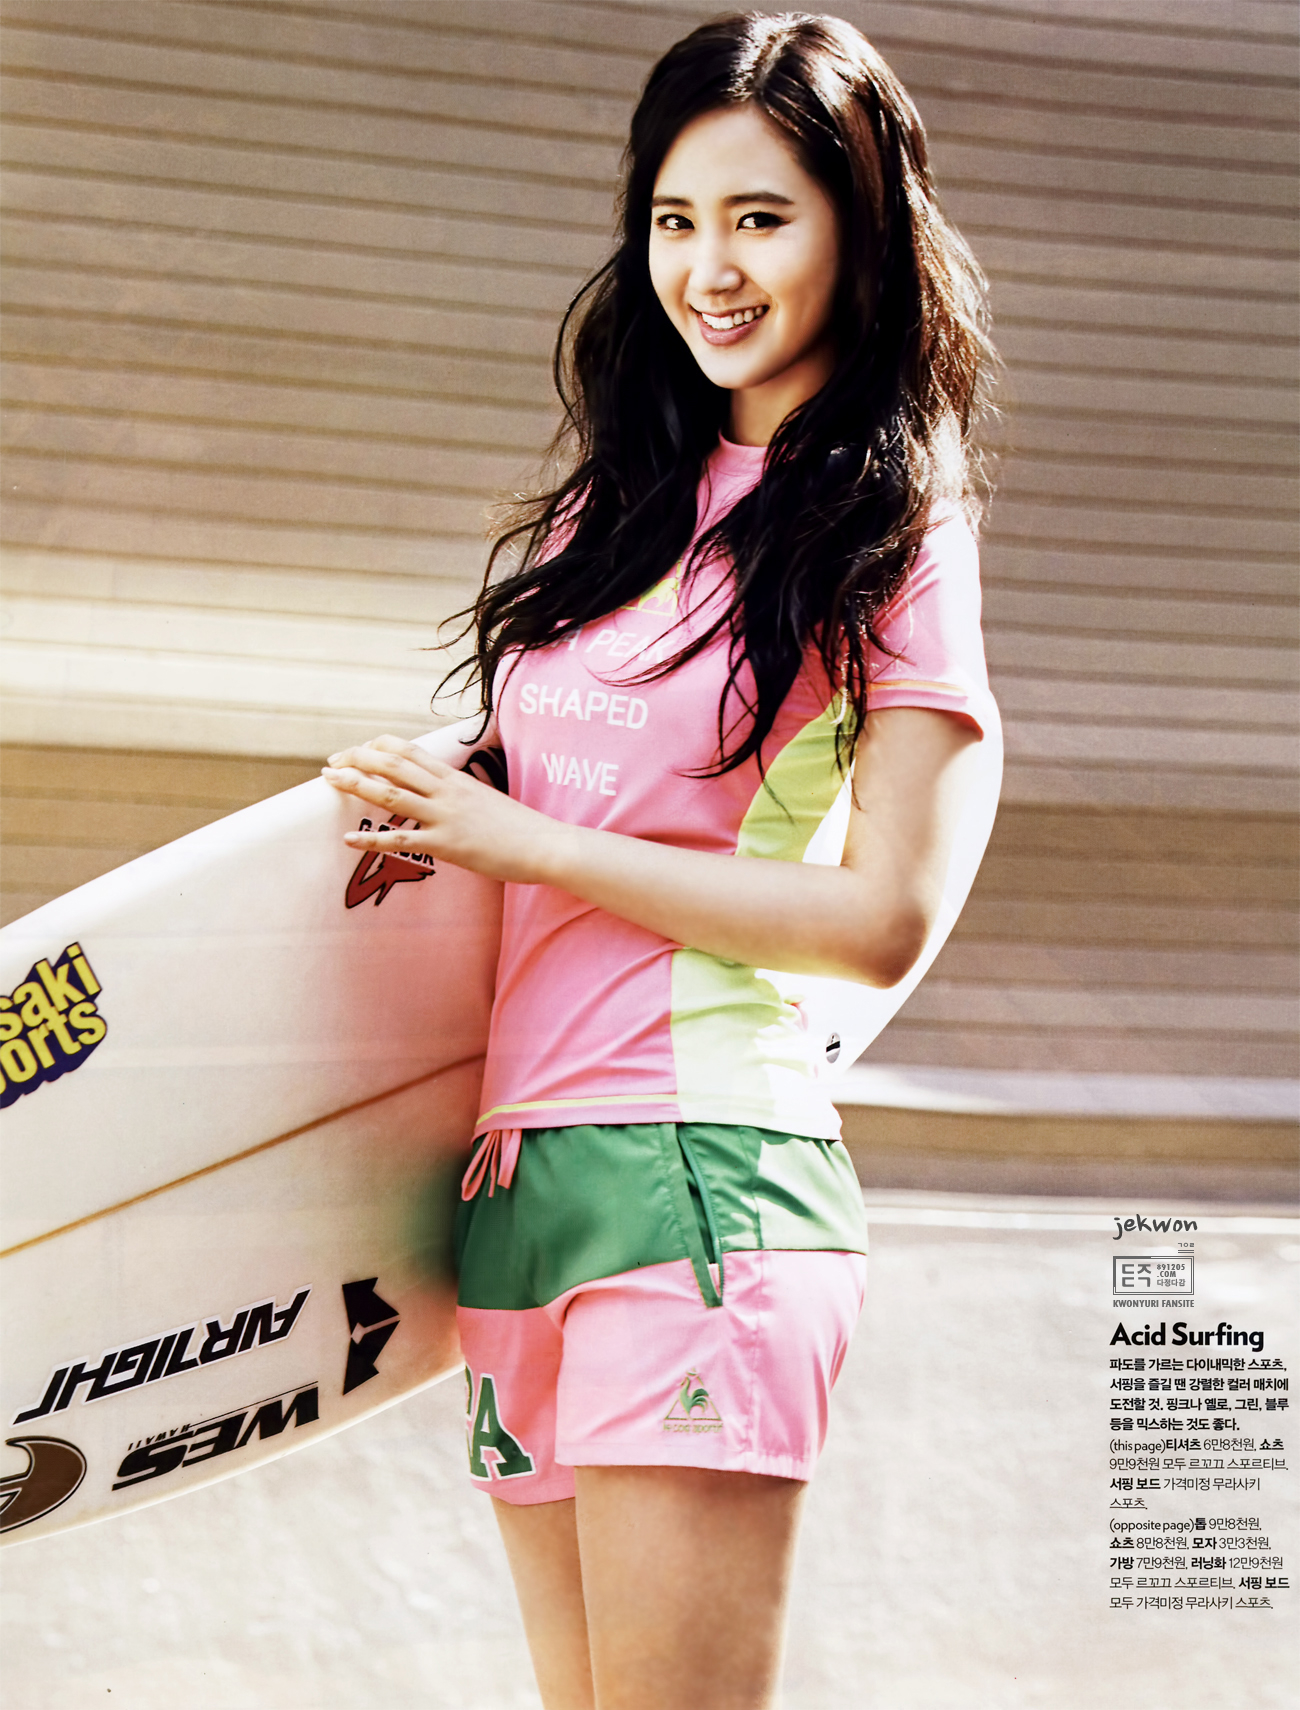 [PIC][21-05-2013]Yuri xuất hiện trên ấn phẩm tháng 6 của tạp chí "Cosmopolitan" 234F3641519B664B28331D